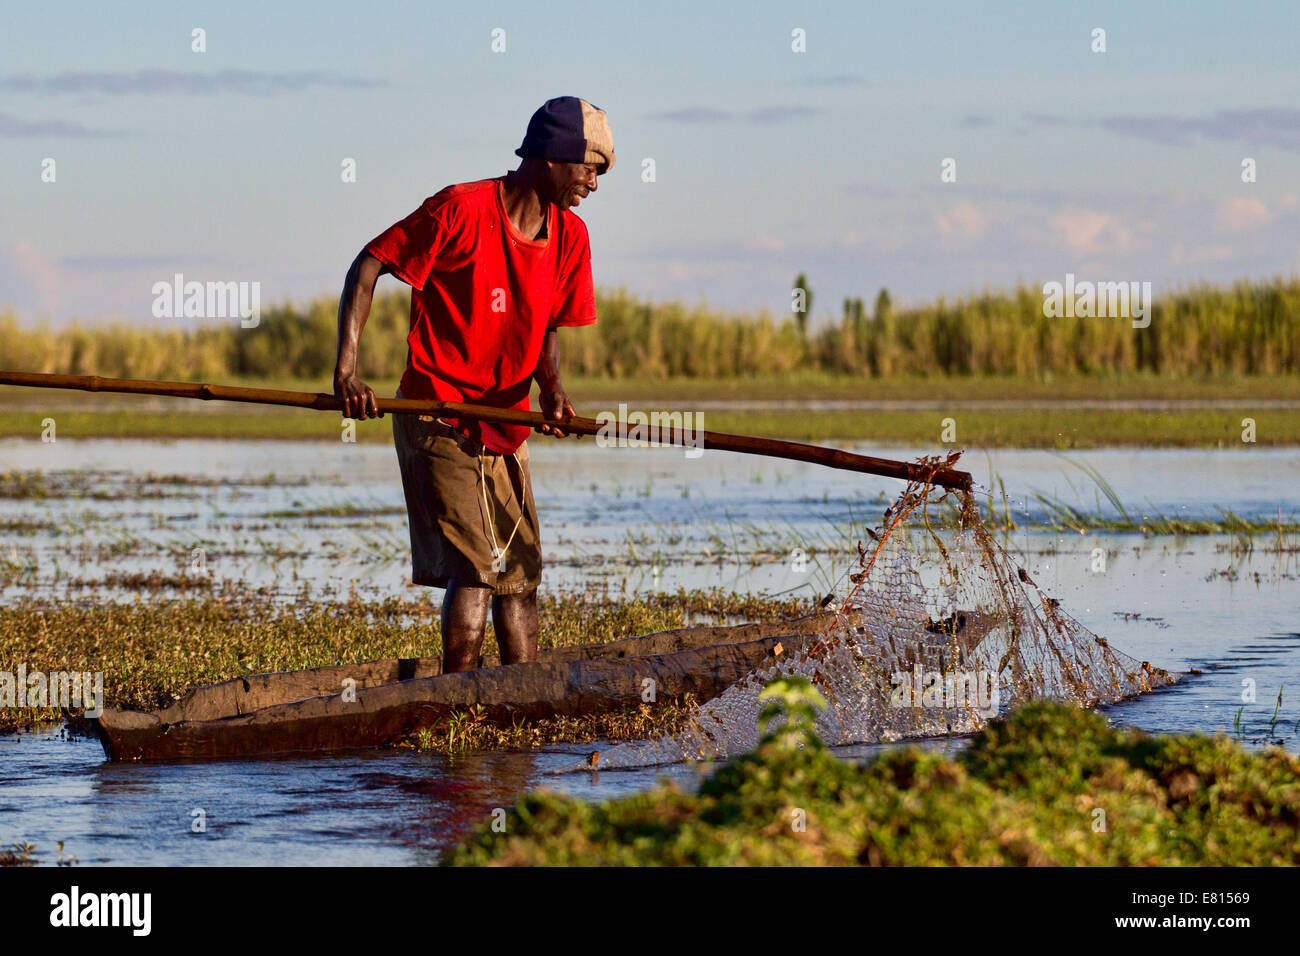 Un pêcheur se glisse dans l'eau en Jiménez-montealegre une pirogue à Bangweulu Les zones humides, la Zambie pour vérifier ses filets traditionnels. Banque D'Images